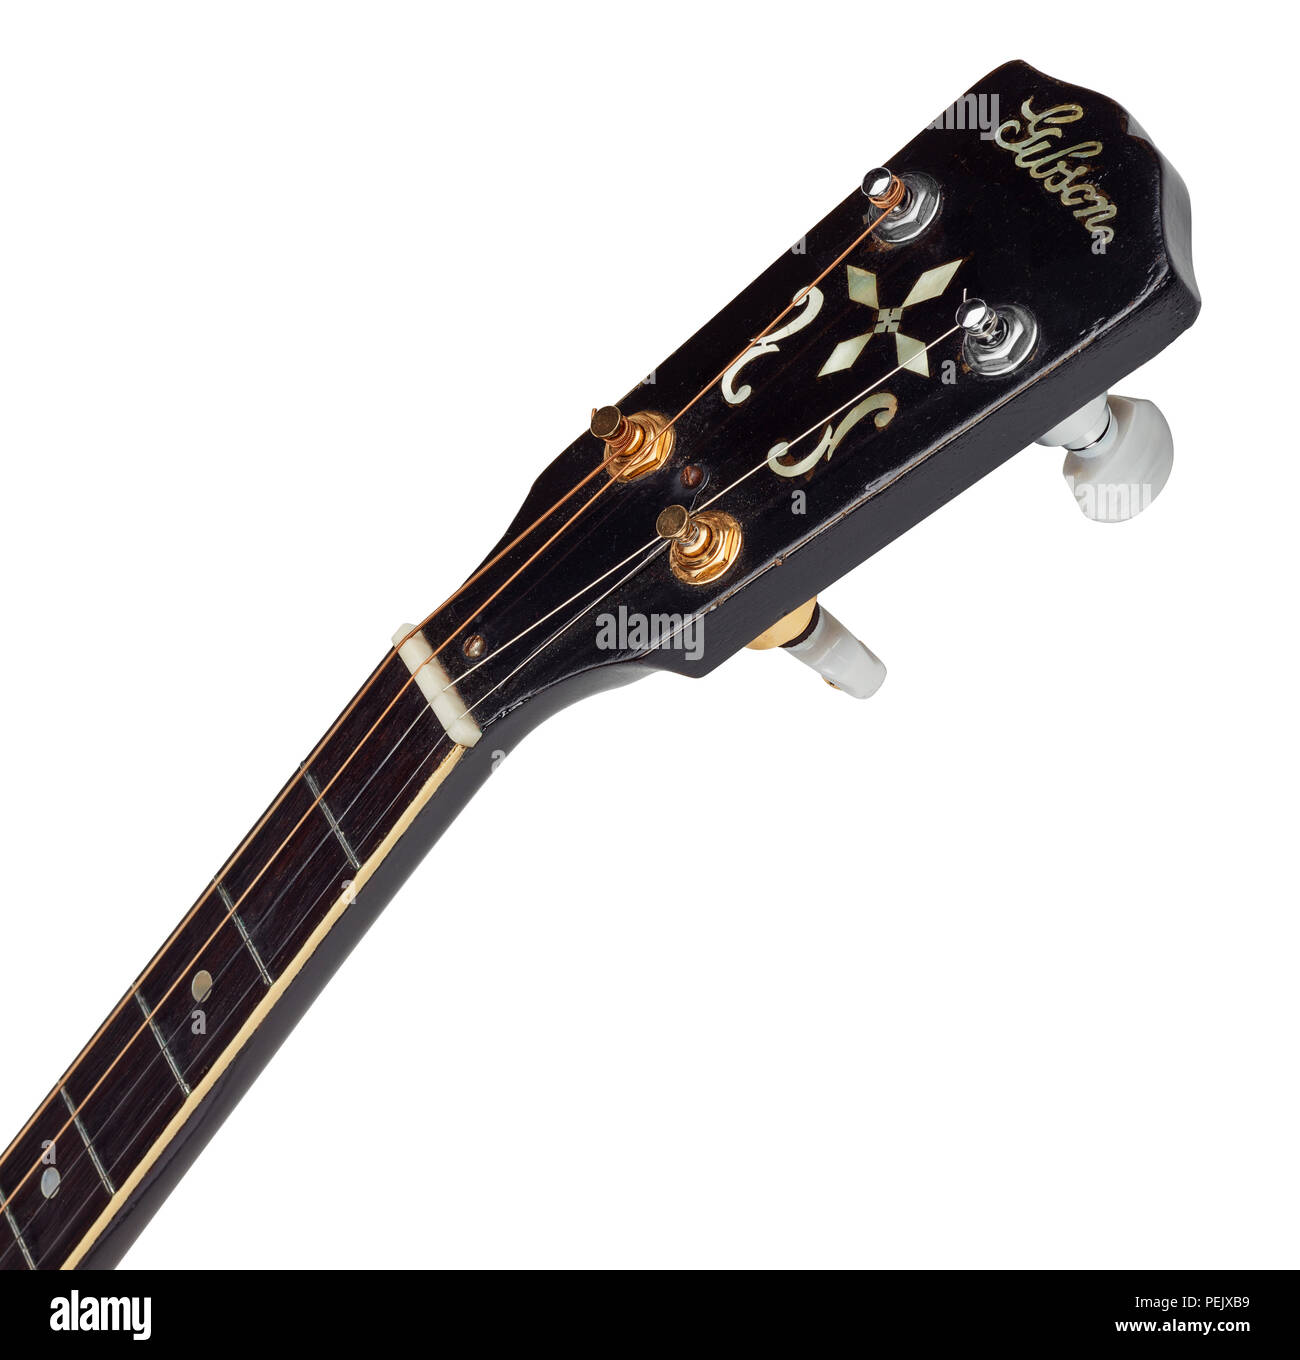 La poupée d'un TG 1930 Gibson guitare ténor montrant le type banjo tuners TV, les deux sont des remplacements pour les originaux les plus faibles étant plaqué or Banque D'Images